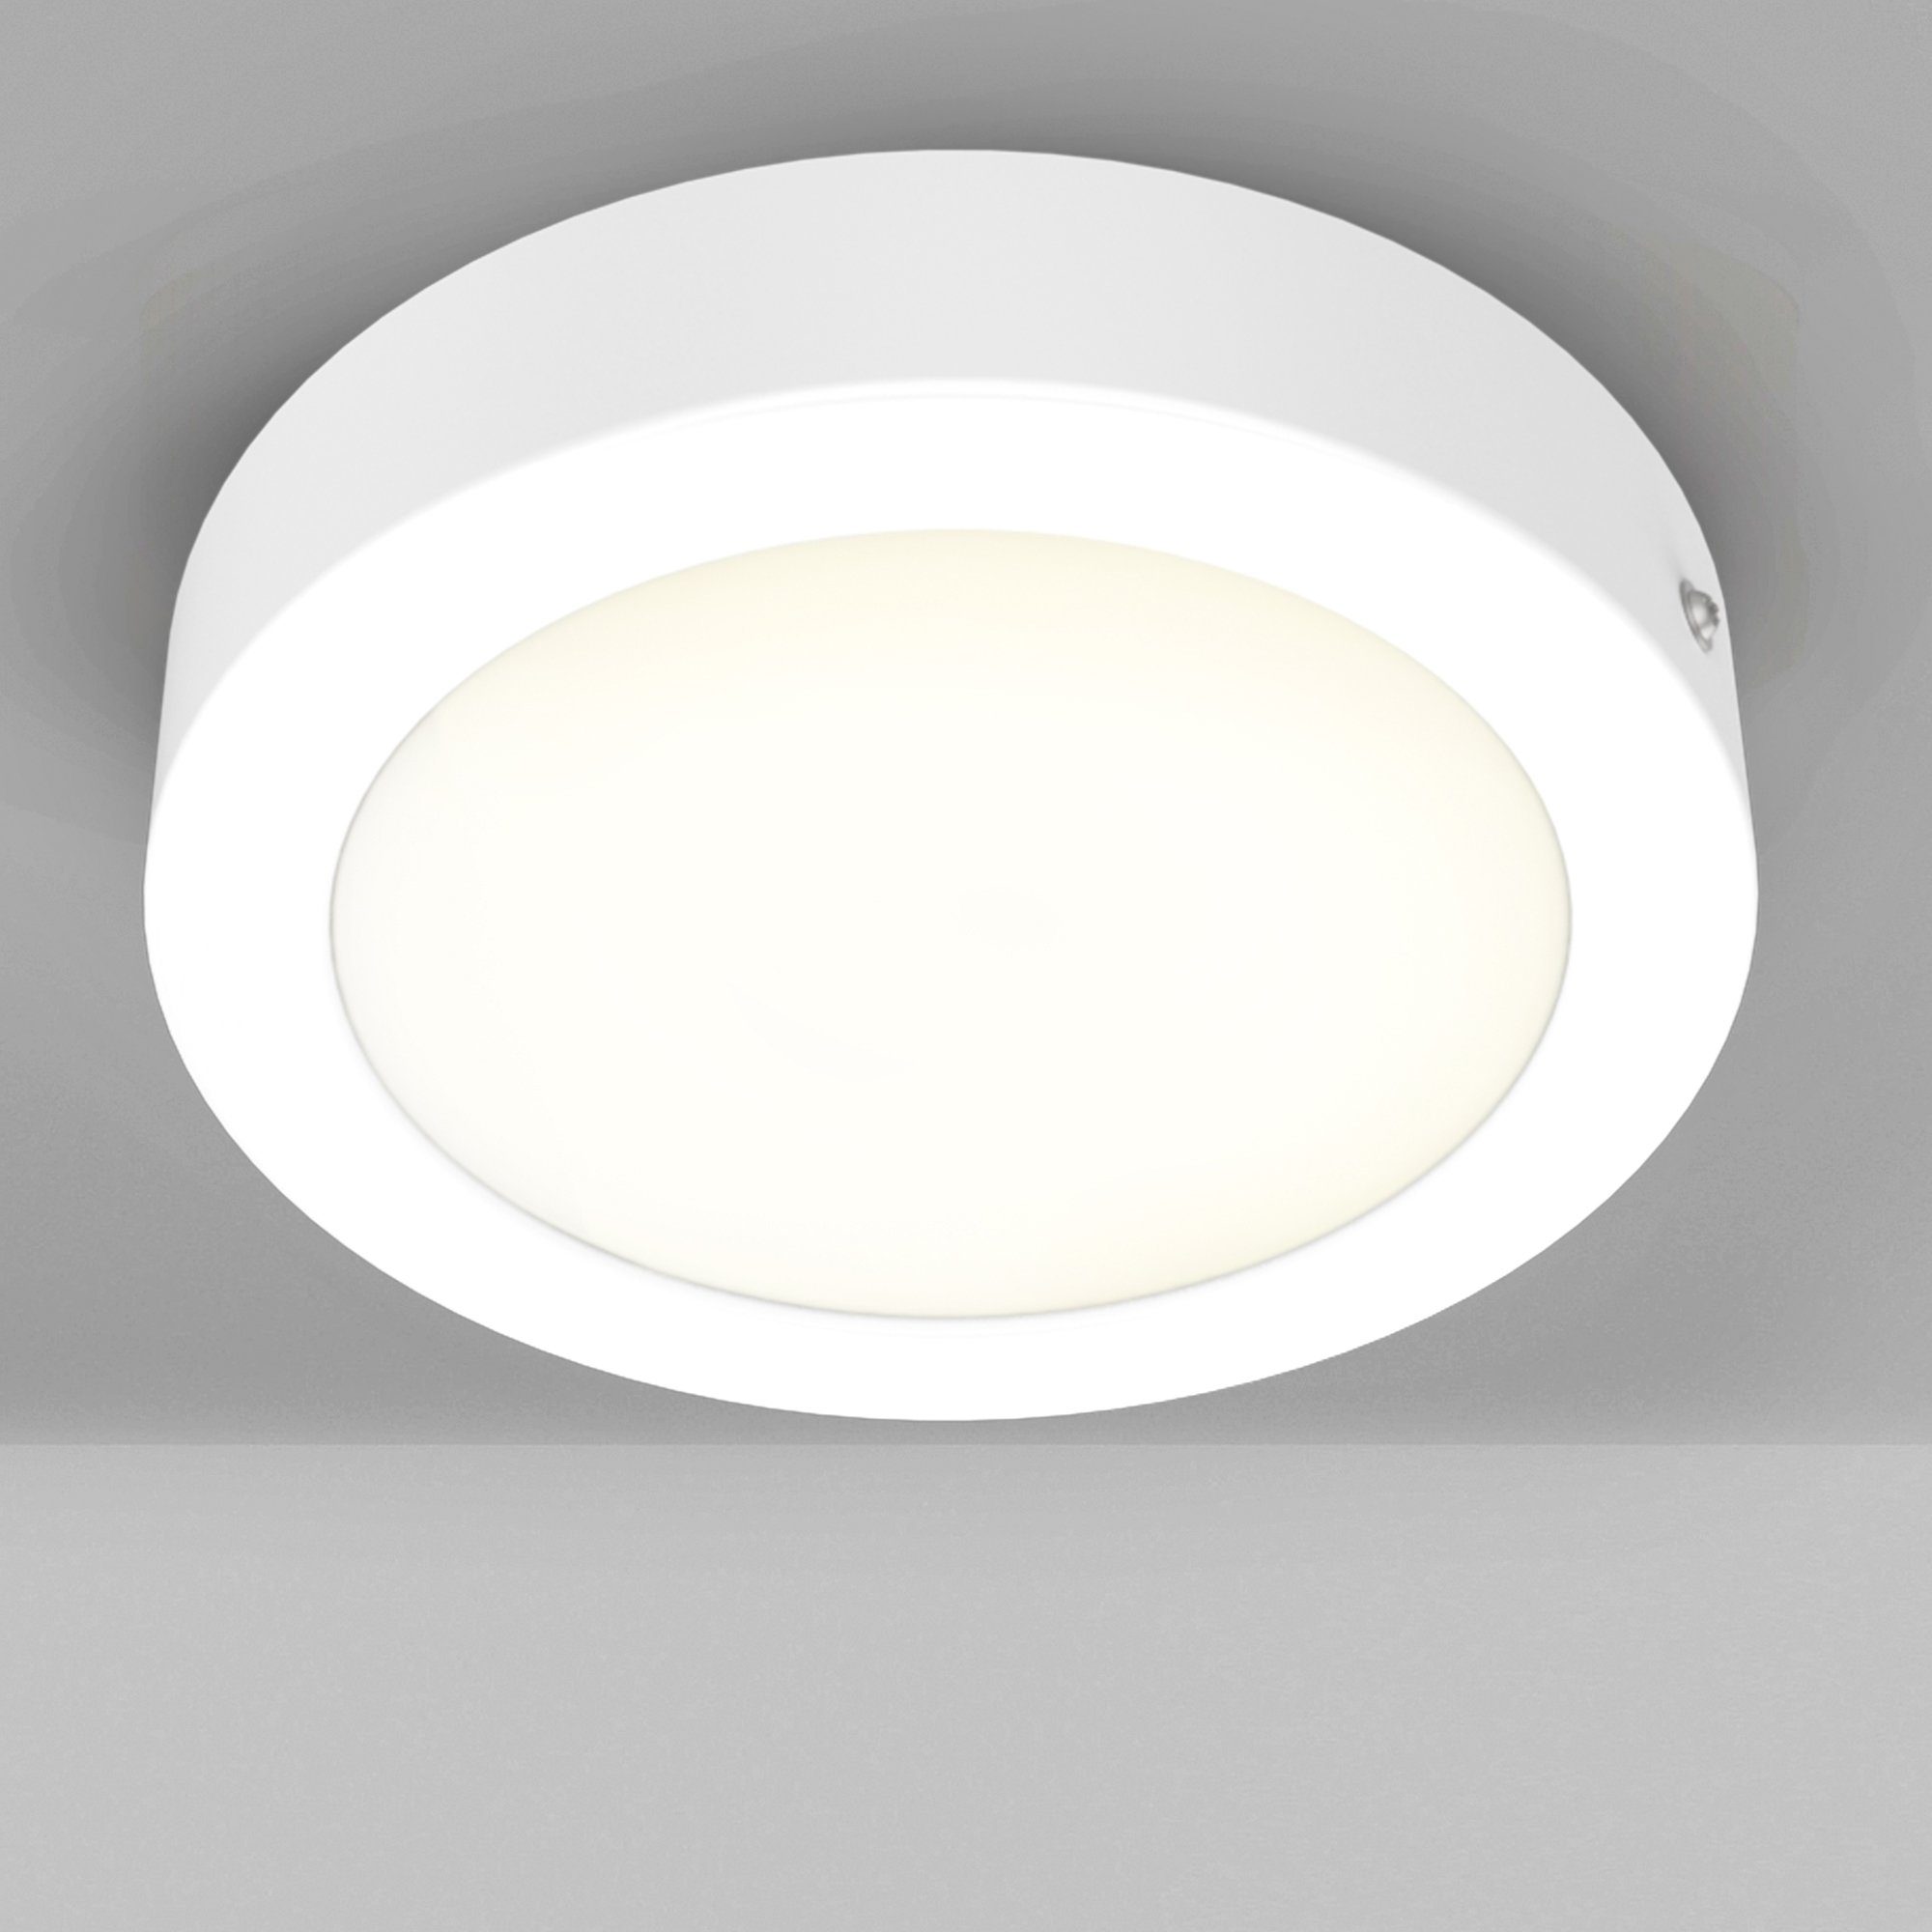 LED LED integriert, Panel, fest Spots, Warmweiß, Ã˜170mm B.K.Licht Unterbauleuchte, Garnet, Aufputz-Decken 900Lm, 12W Aufbaustrahler